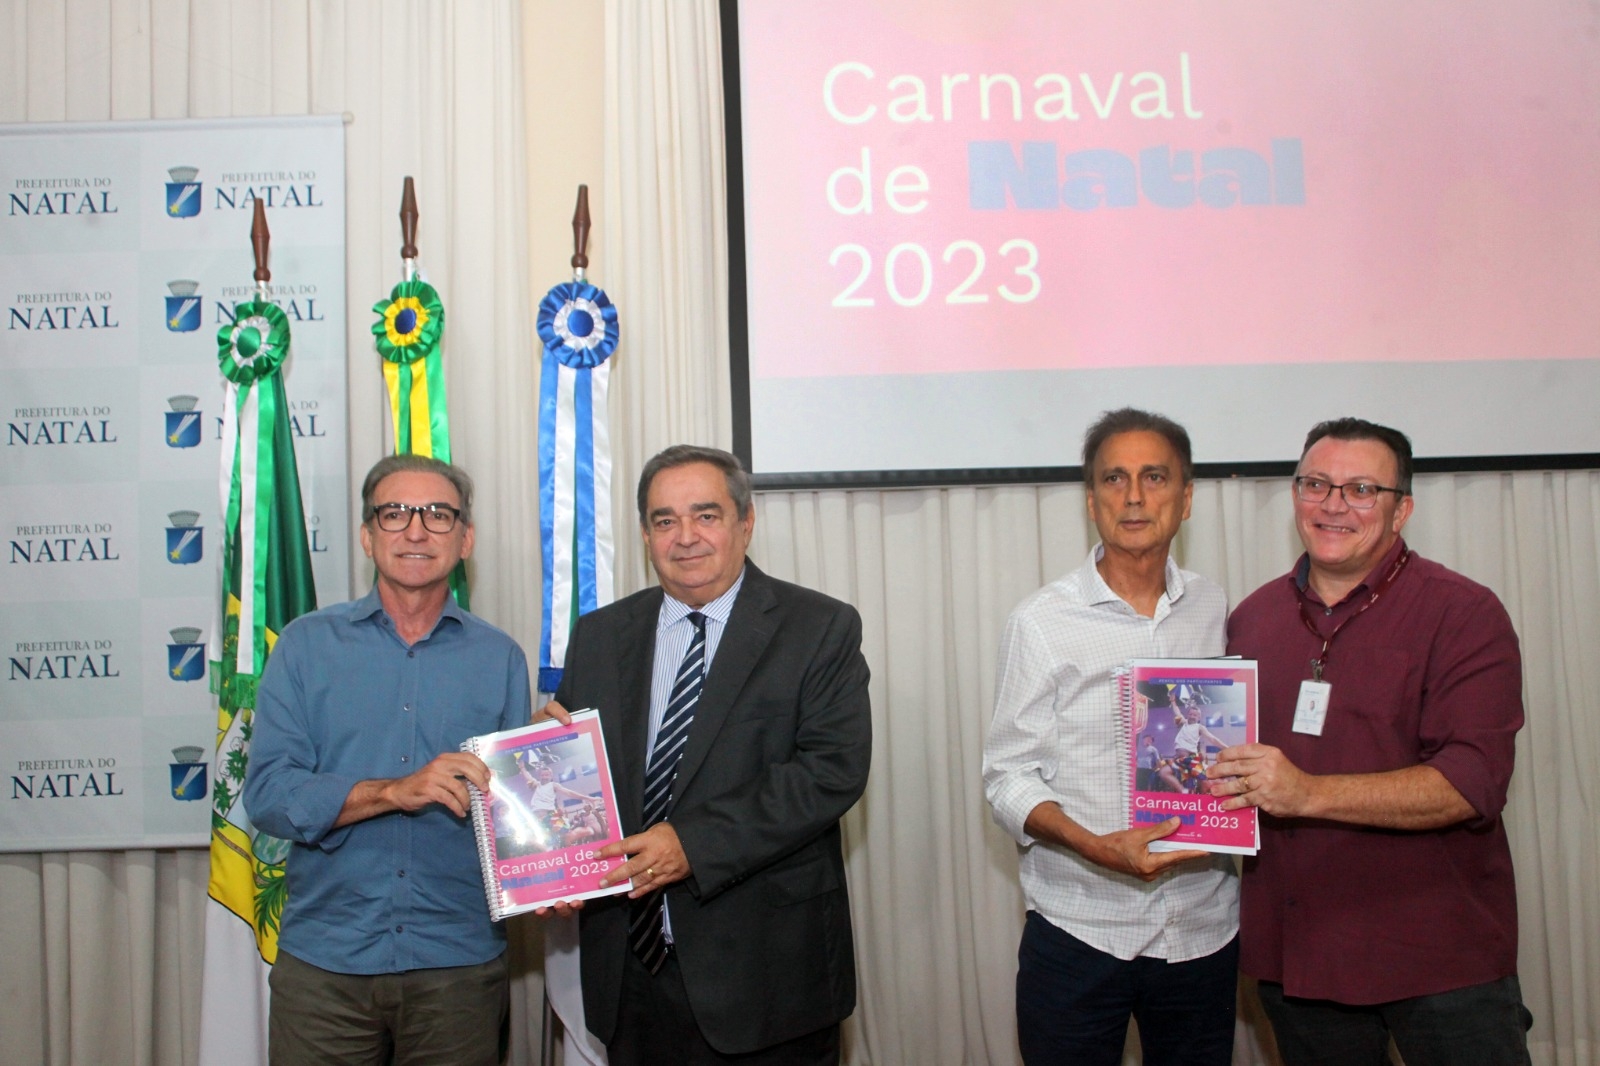 Carnaval de Natal movimenta R$ 126,8 milhões na economia local